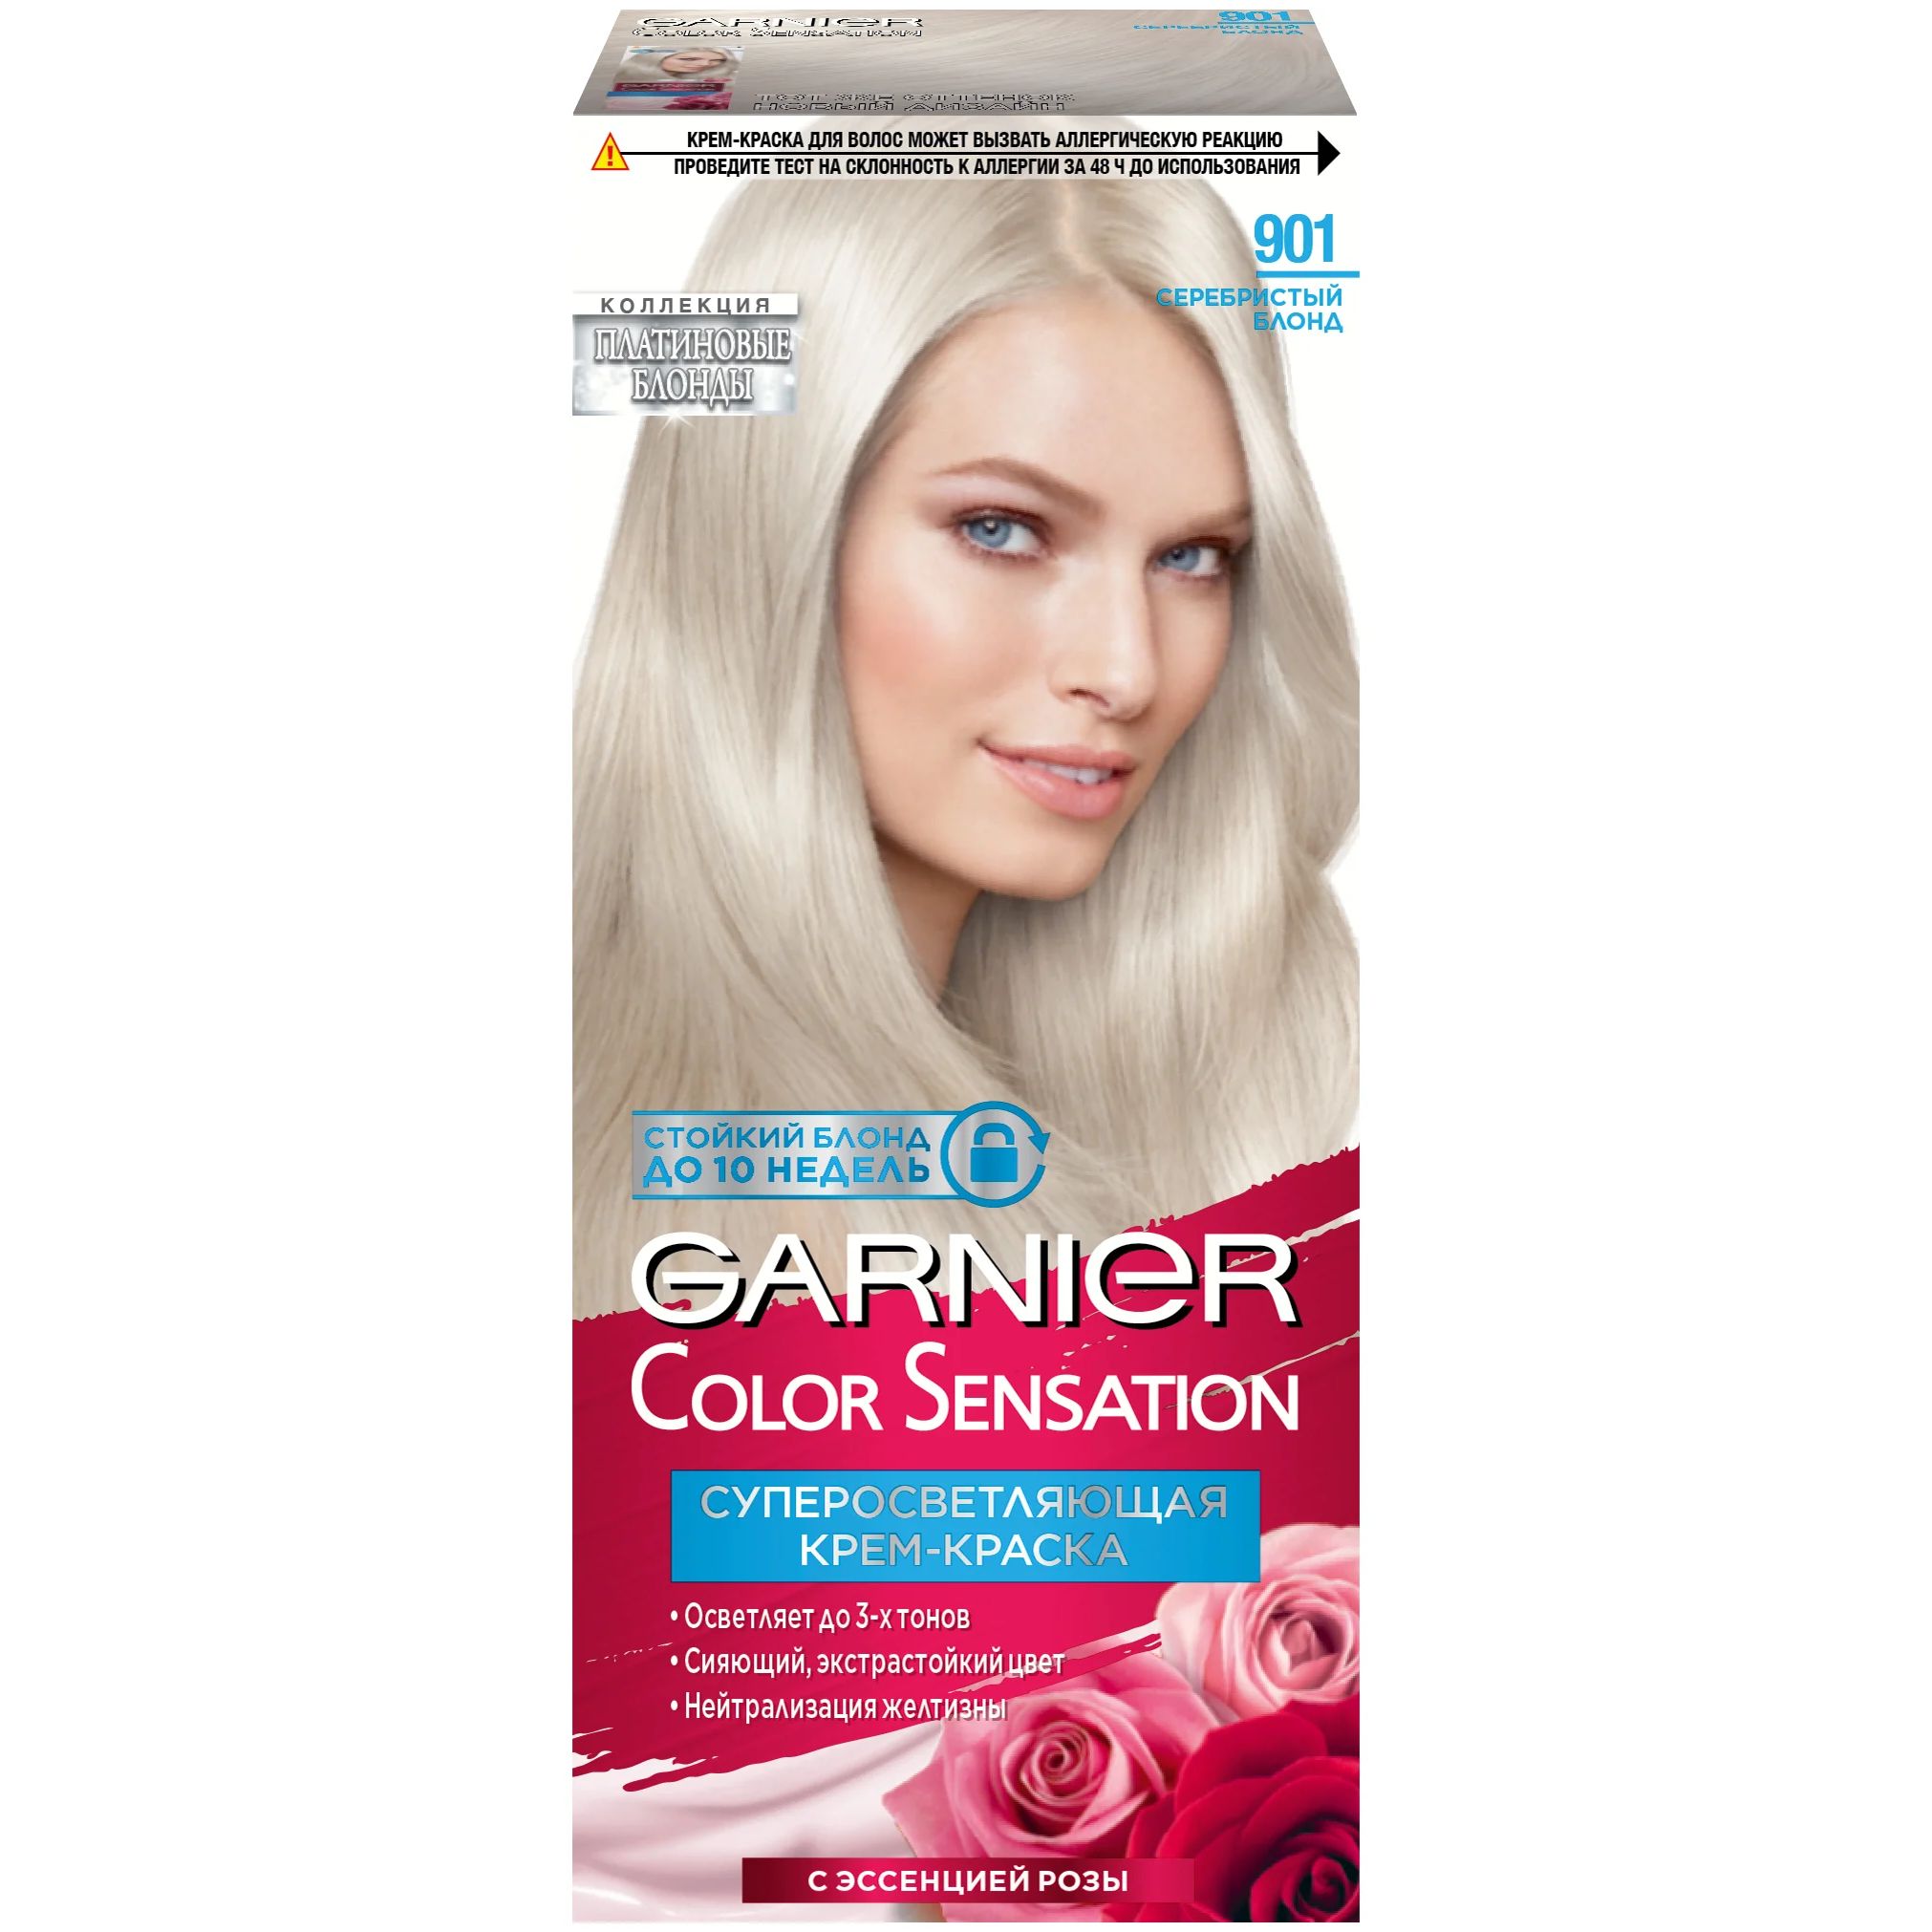 Крем-краска для волос Garnier Color Sensation 901 Серебристый Блонд крем краска garnier color naturals 112 суперосветляющий жемчужно платиновый блонд 120 мл